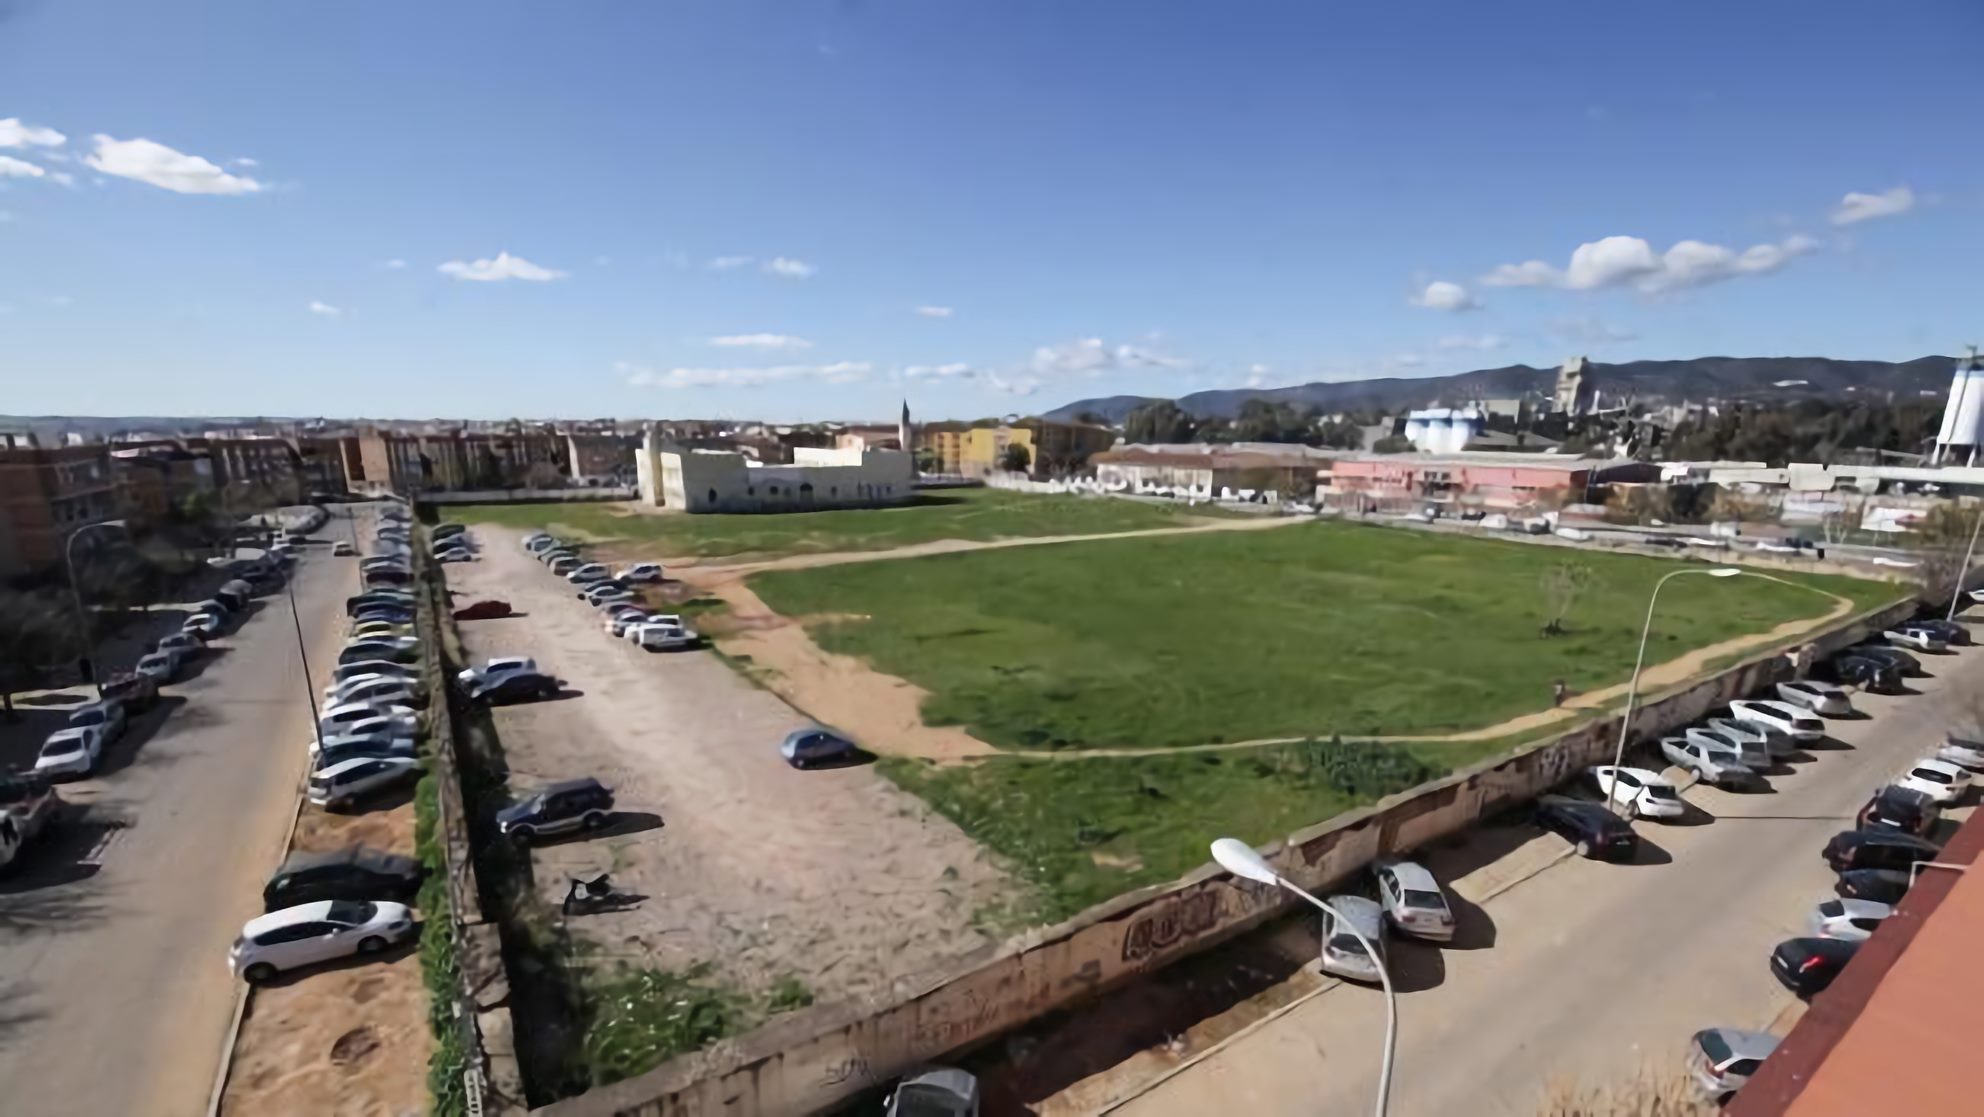 El proyecto de la vieja prisión de Fátima empieza a cobrar vida tras 15 años atascado